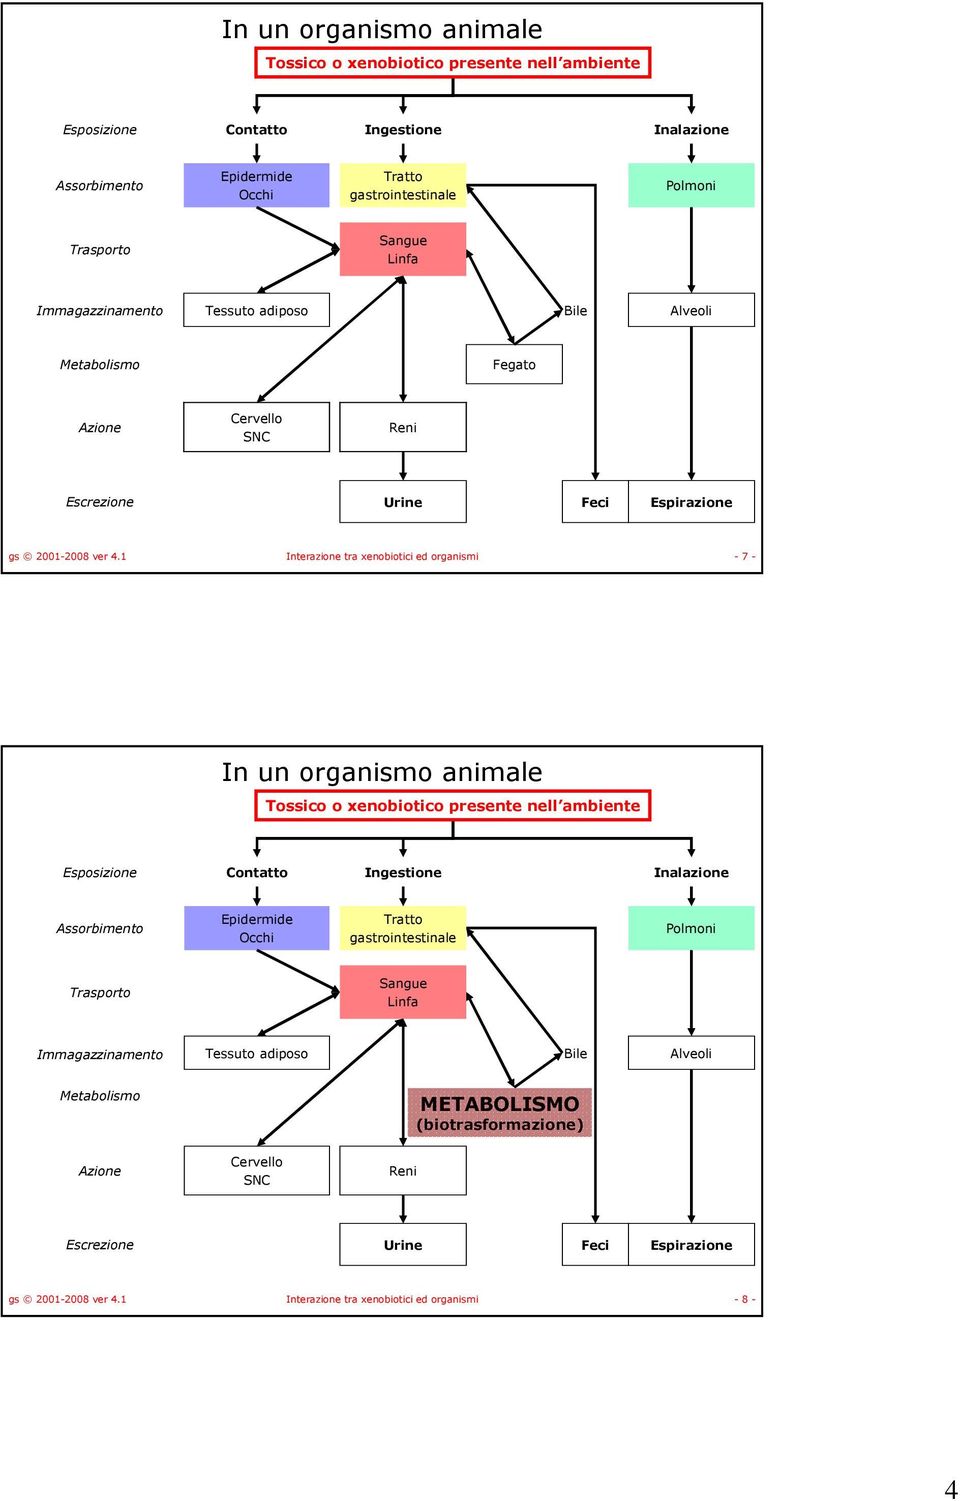 1 Interazione tra xenobiotici ed organismi - 7 -  Immagazzinamento Tessuto adiposo Bile Alveoli Metabolismo METABOLISMO (biotrasformazione) Azione Cervello SNC Reni Escrezione Urine Feci Espirazione